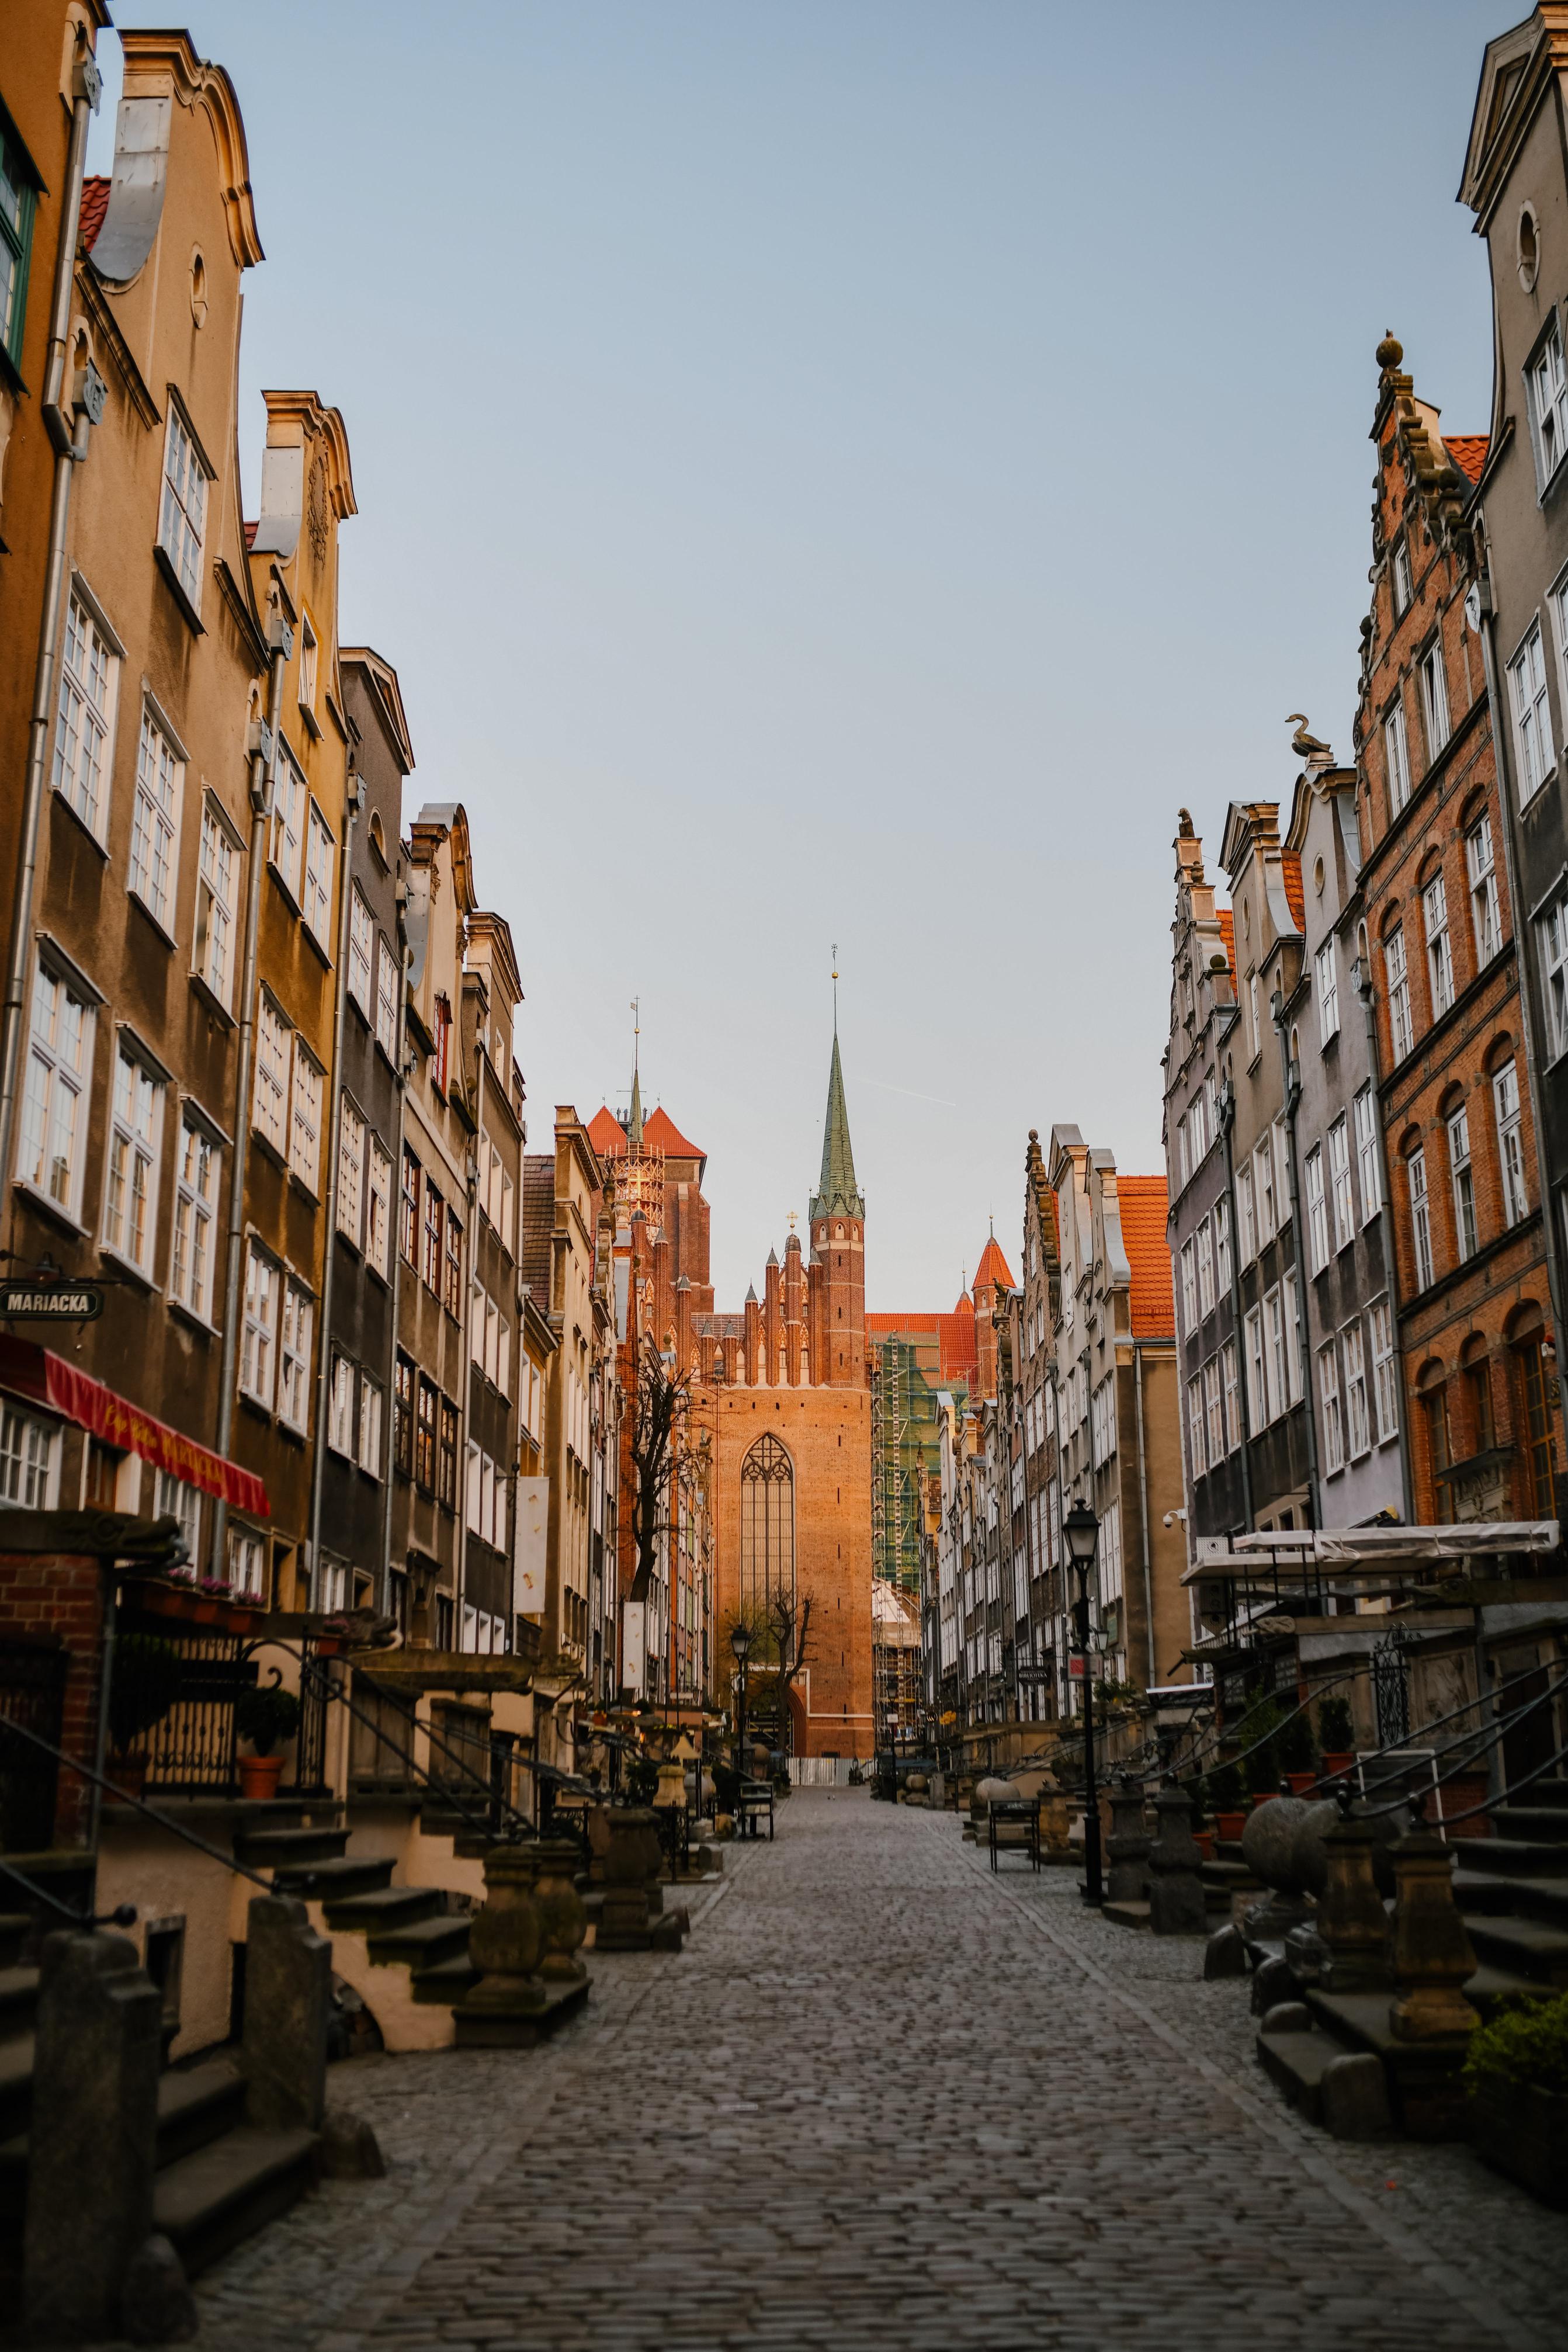 Atrakcje historyczne w zasięgu spaceru od centrum noclegowego w gdańsku